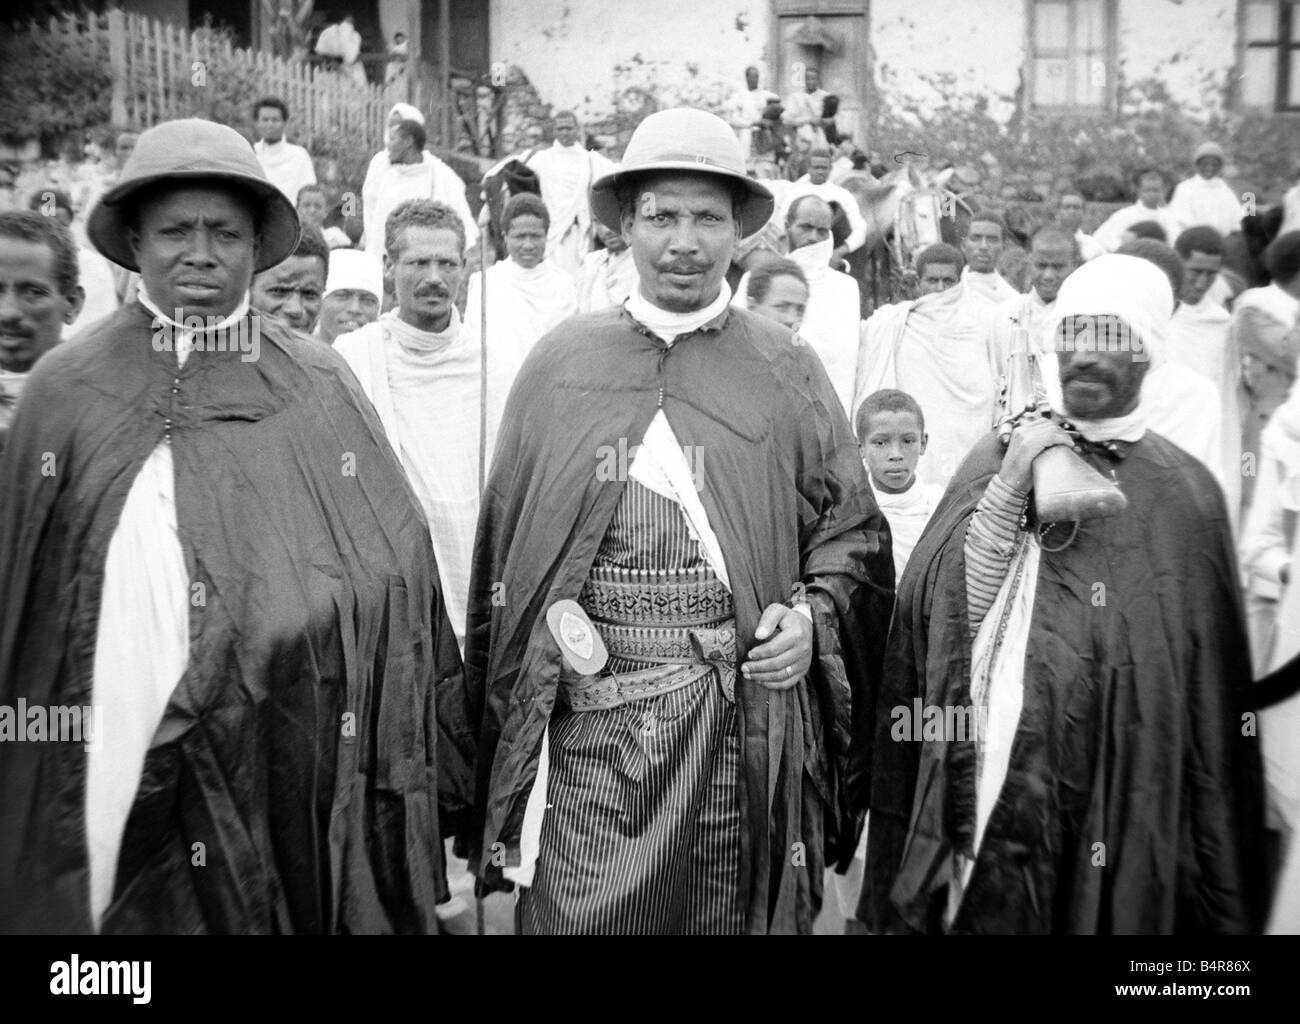 Les hommes de l'Abyssinie vers 1935 Conflit guerre de militaires hommes Afrique Ethiopie 1930 Banque D'Images